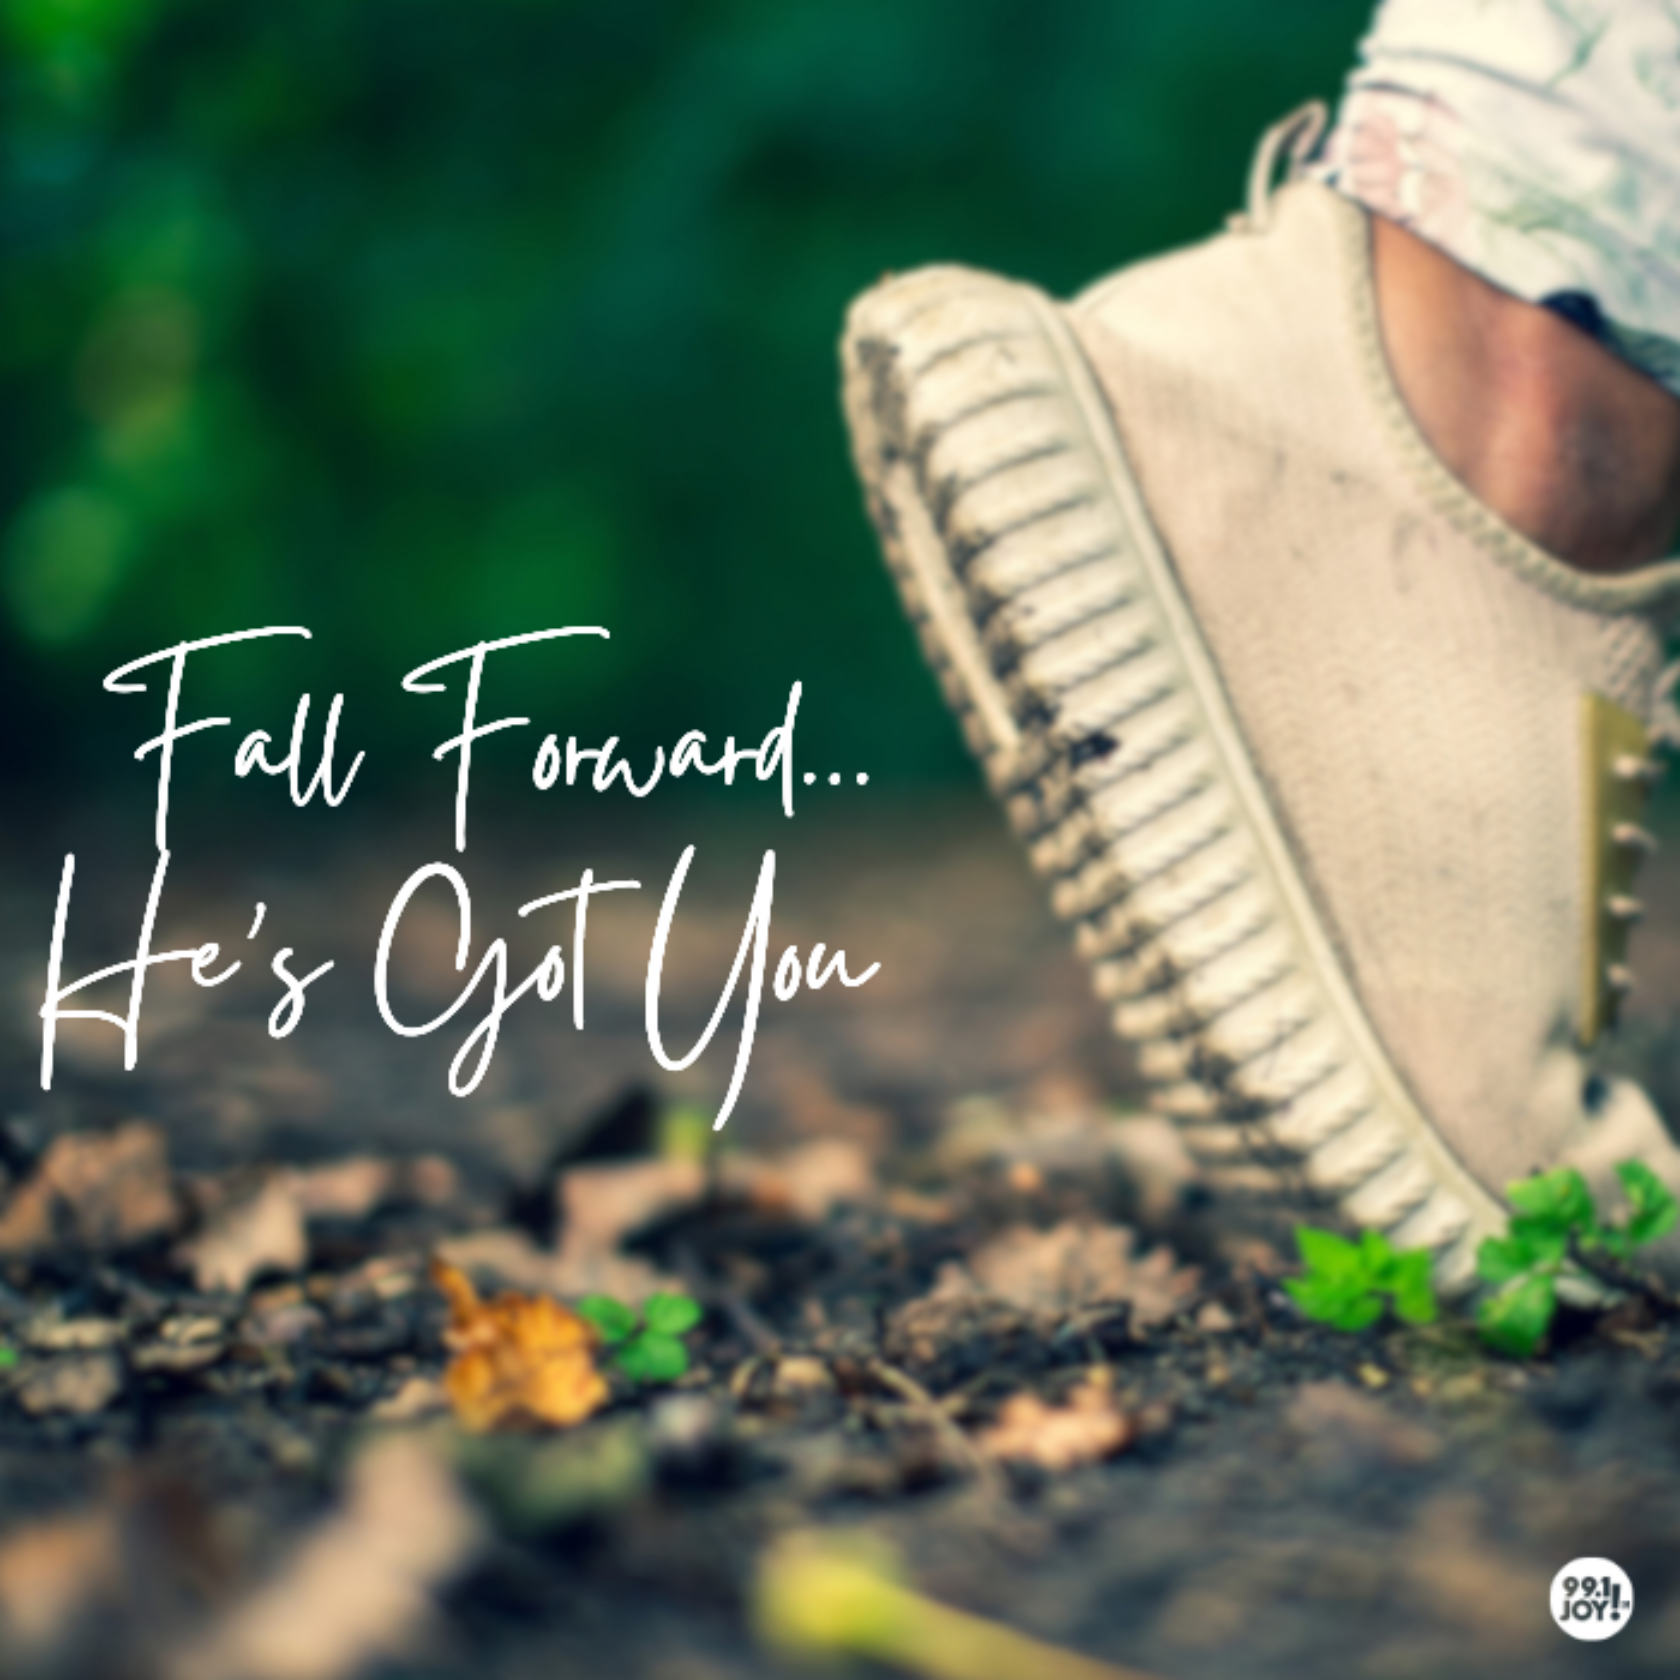 Fall Forward…He’s Got You